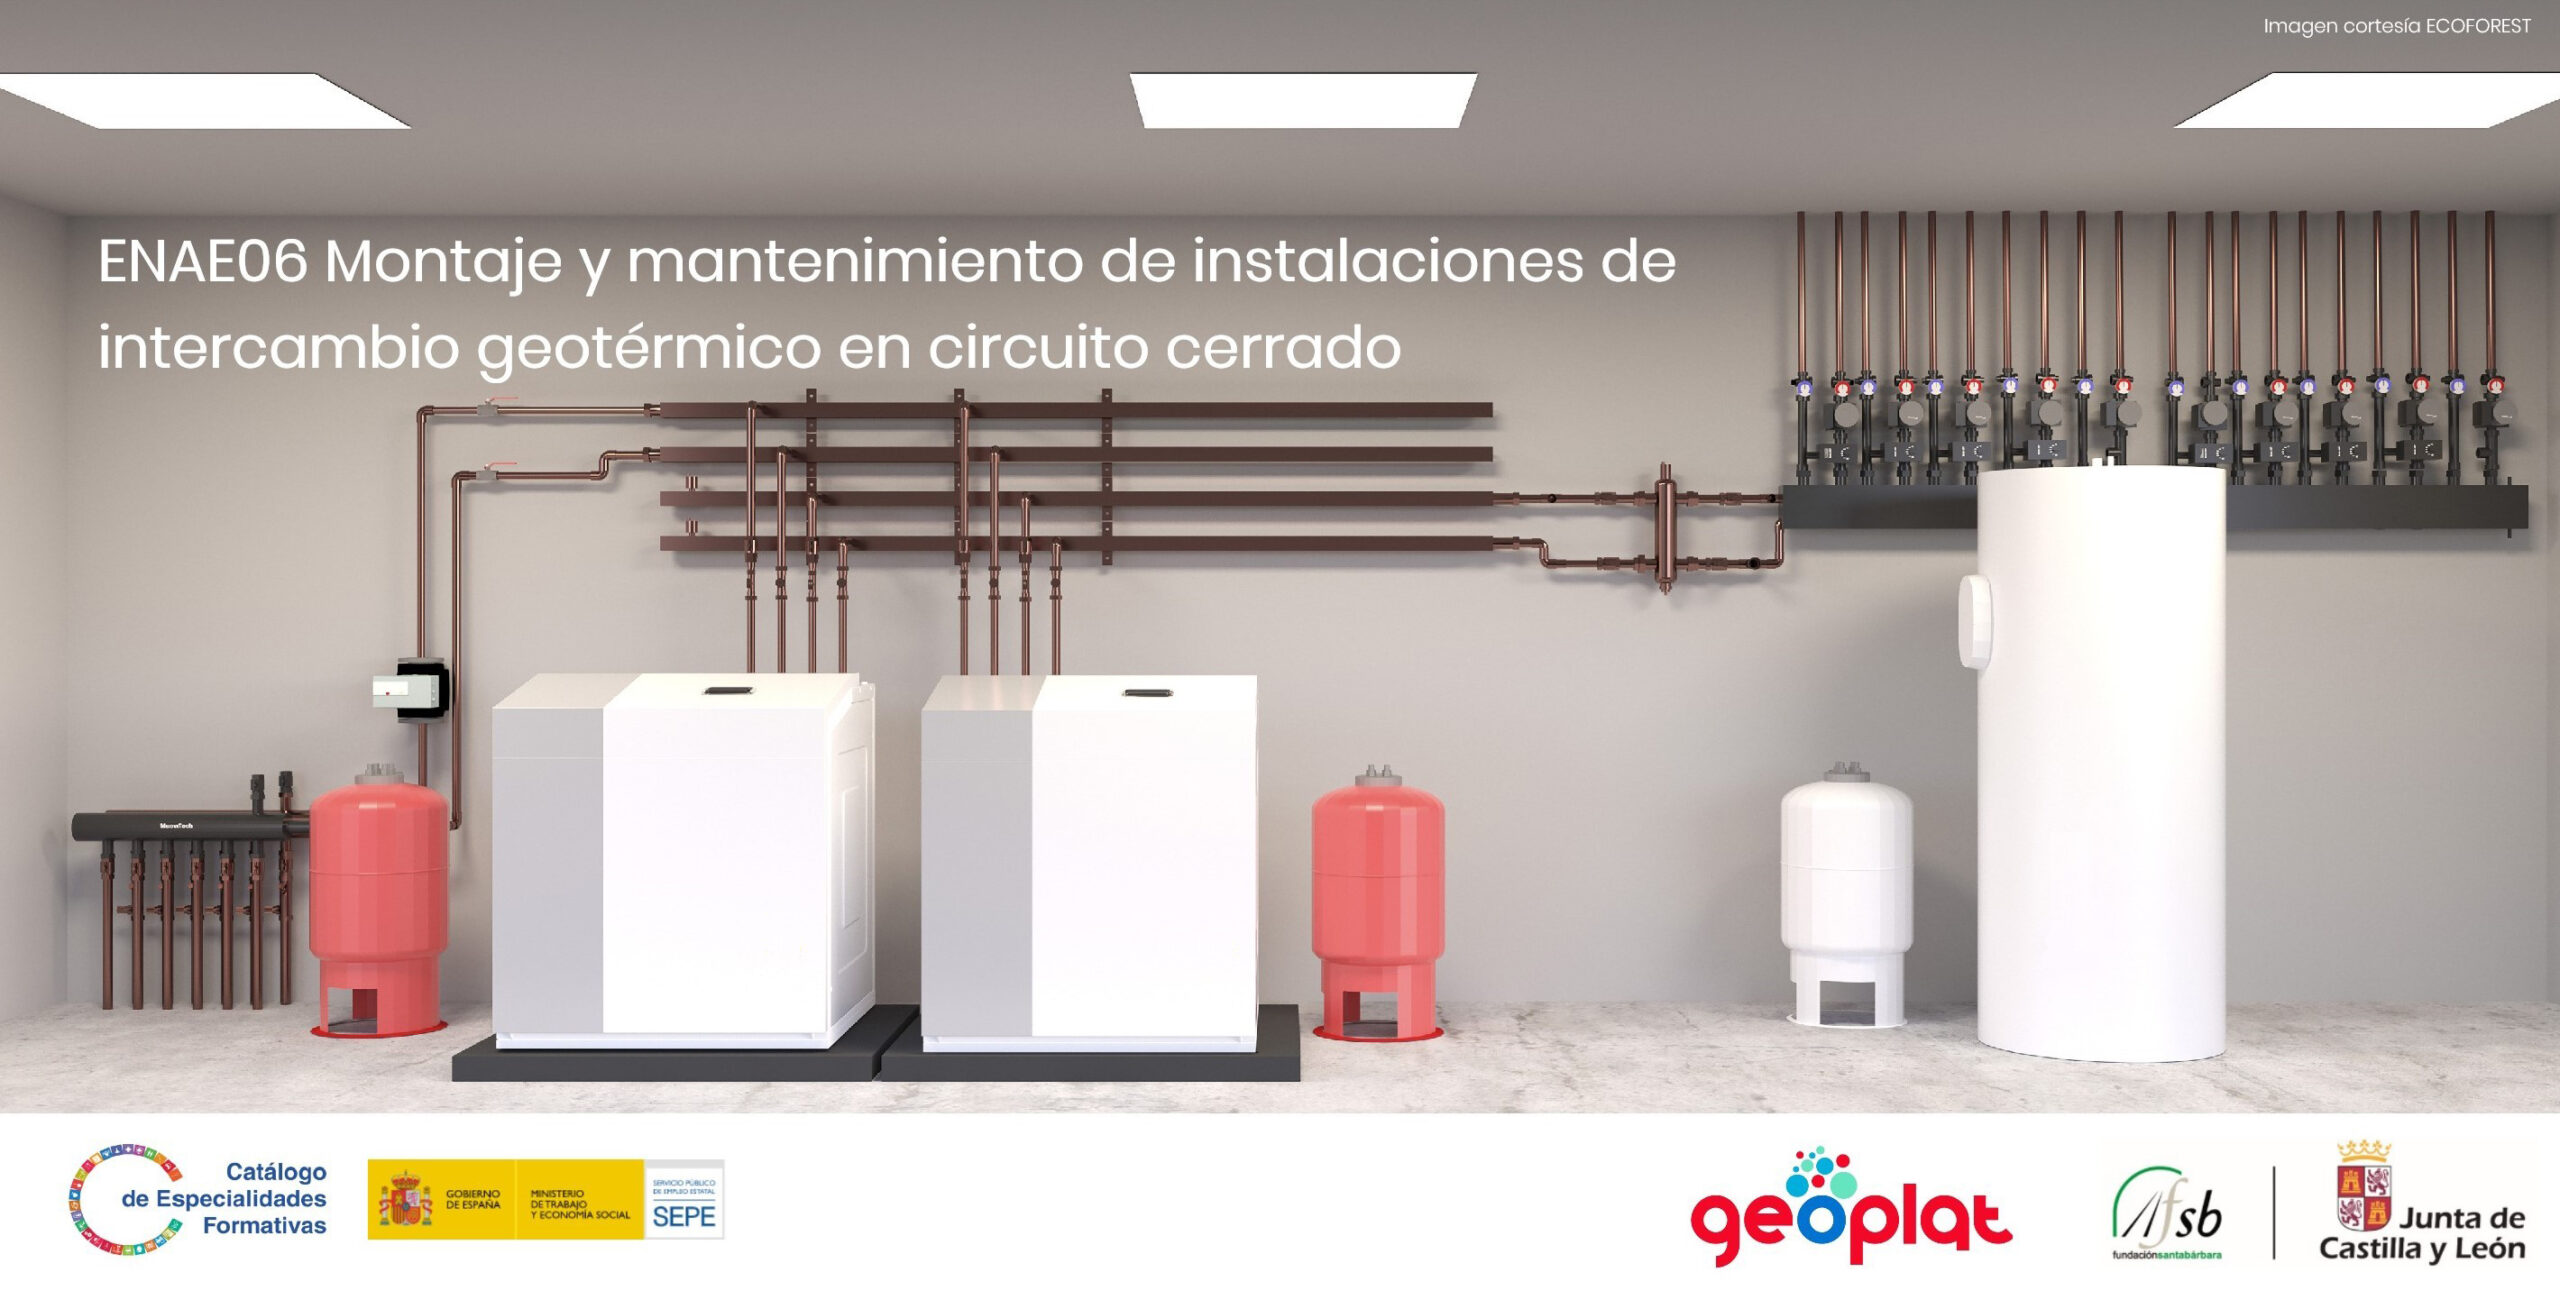 (Español) El Servicio Público de Empleo ha incluido la geotermia en el Catálogo de Especialidades Formativas